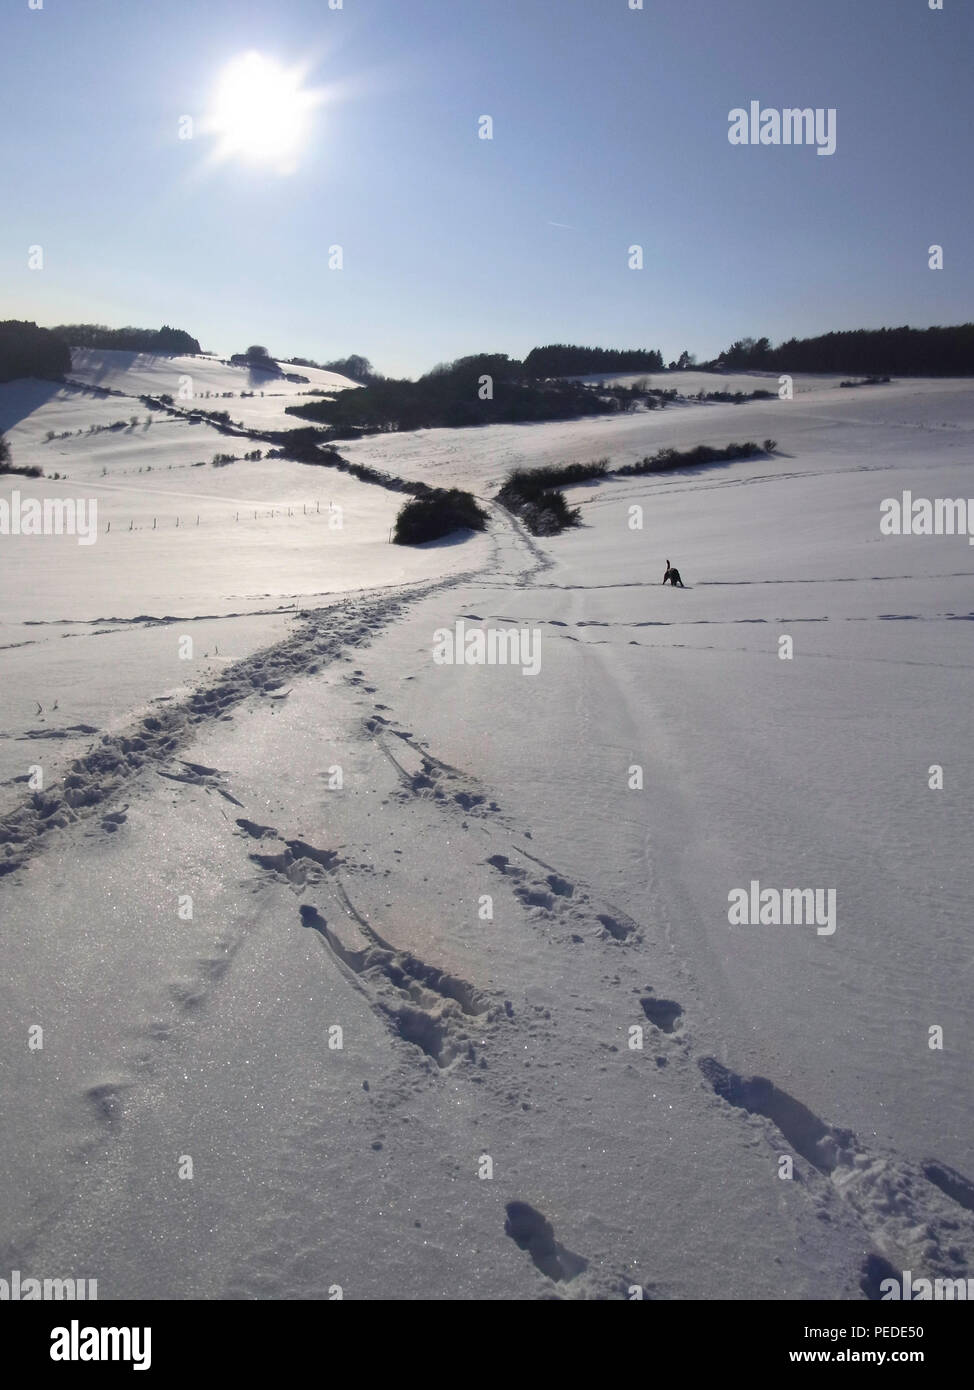 Spuren in einer ruhigen Winterlandschaft mit viel Schnee, die zu einem Spaziergang einlädt, auf dem uomo Abstand zu den Alltagssorgen finden kann Foto Stock